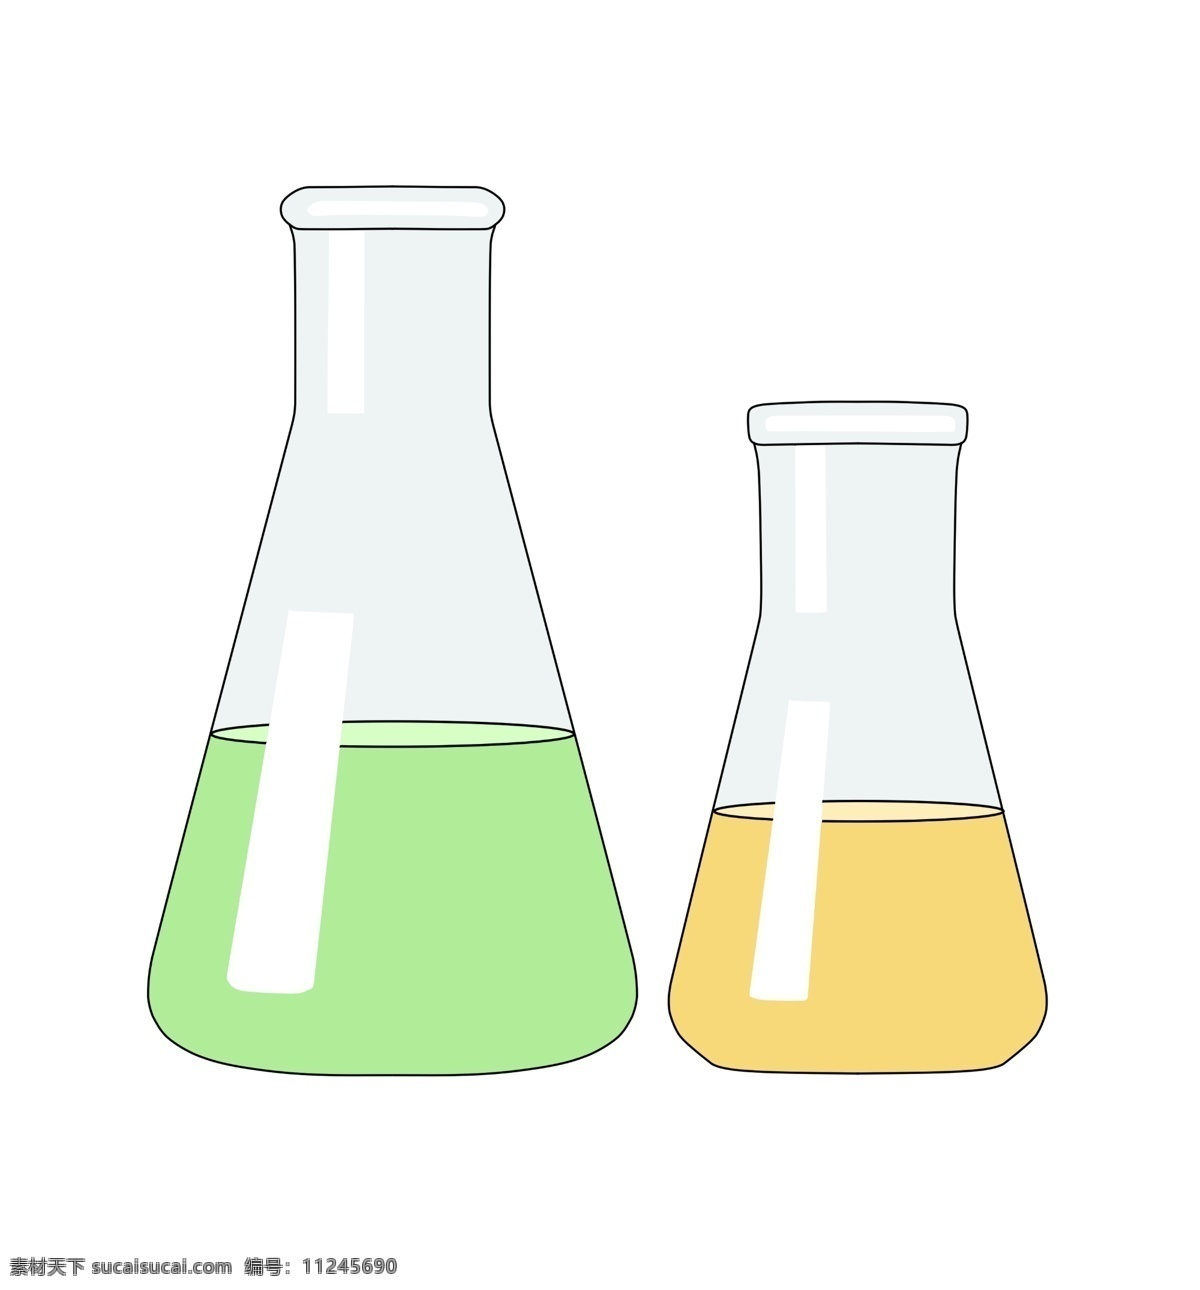 两个 化学 烧瓶 插图 化学烧瓶 玻璃烧瓶 绿色化学药物 黄色液体 两个烧瓶 化学烧瓶插图 烧杯